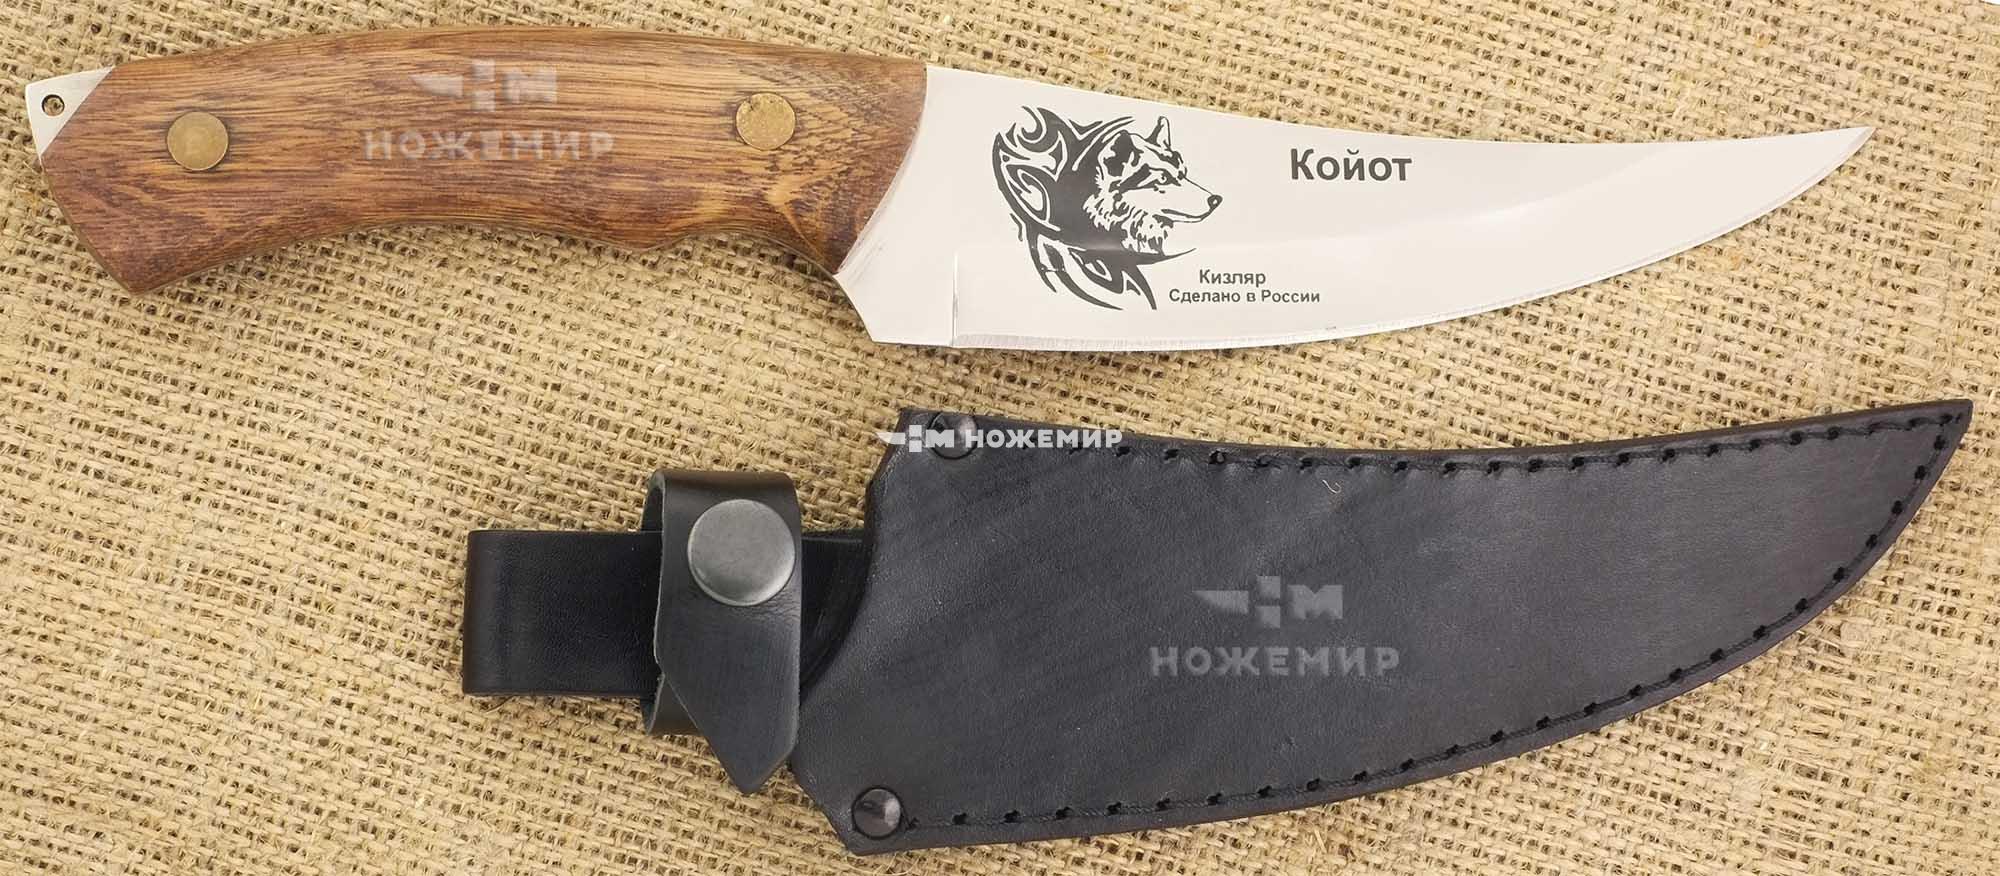 Нож нескладной Кизляр КОЙОТ-ЦМ (3825)